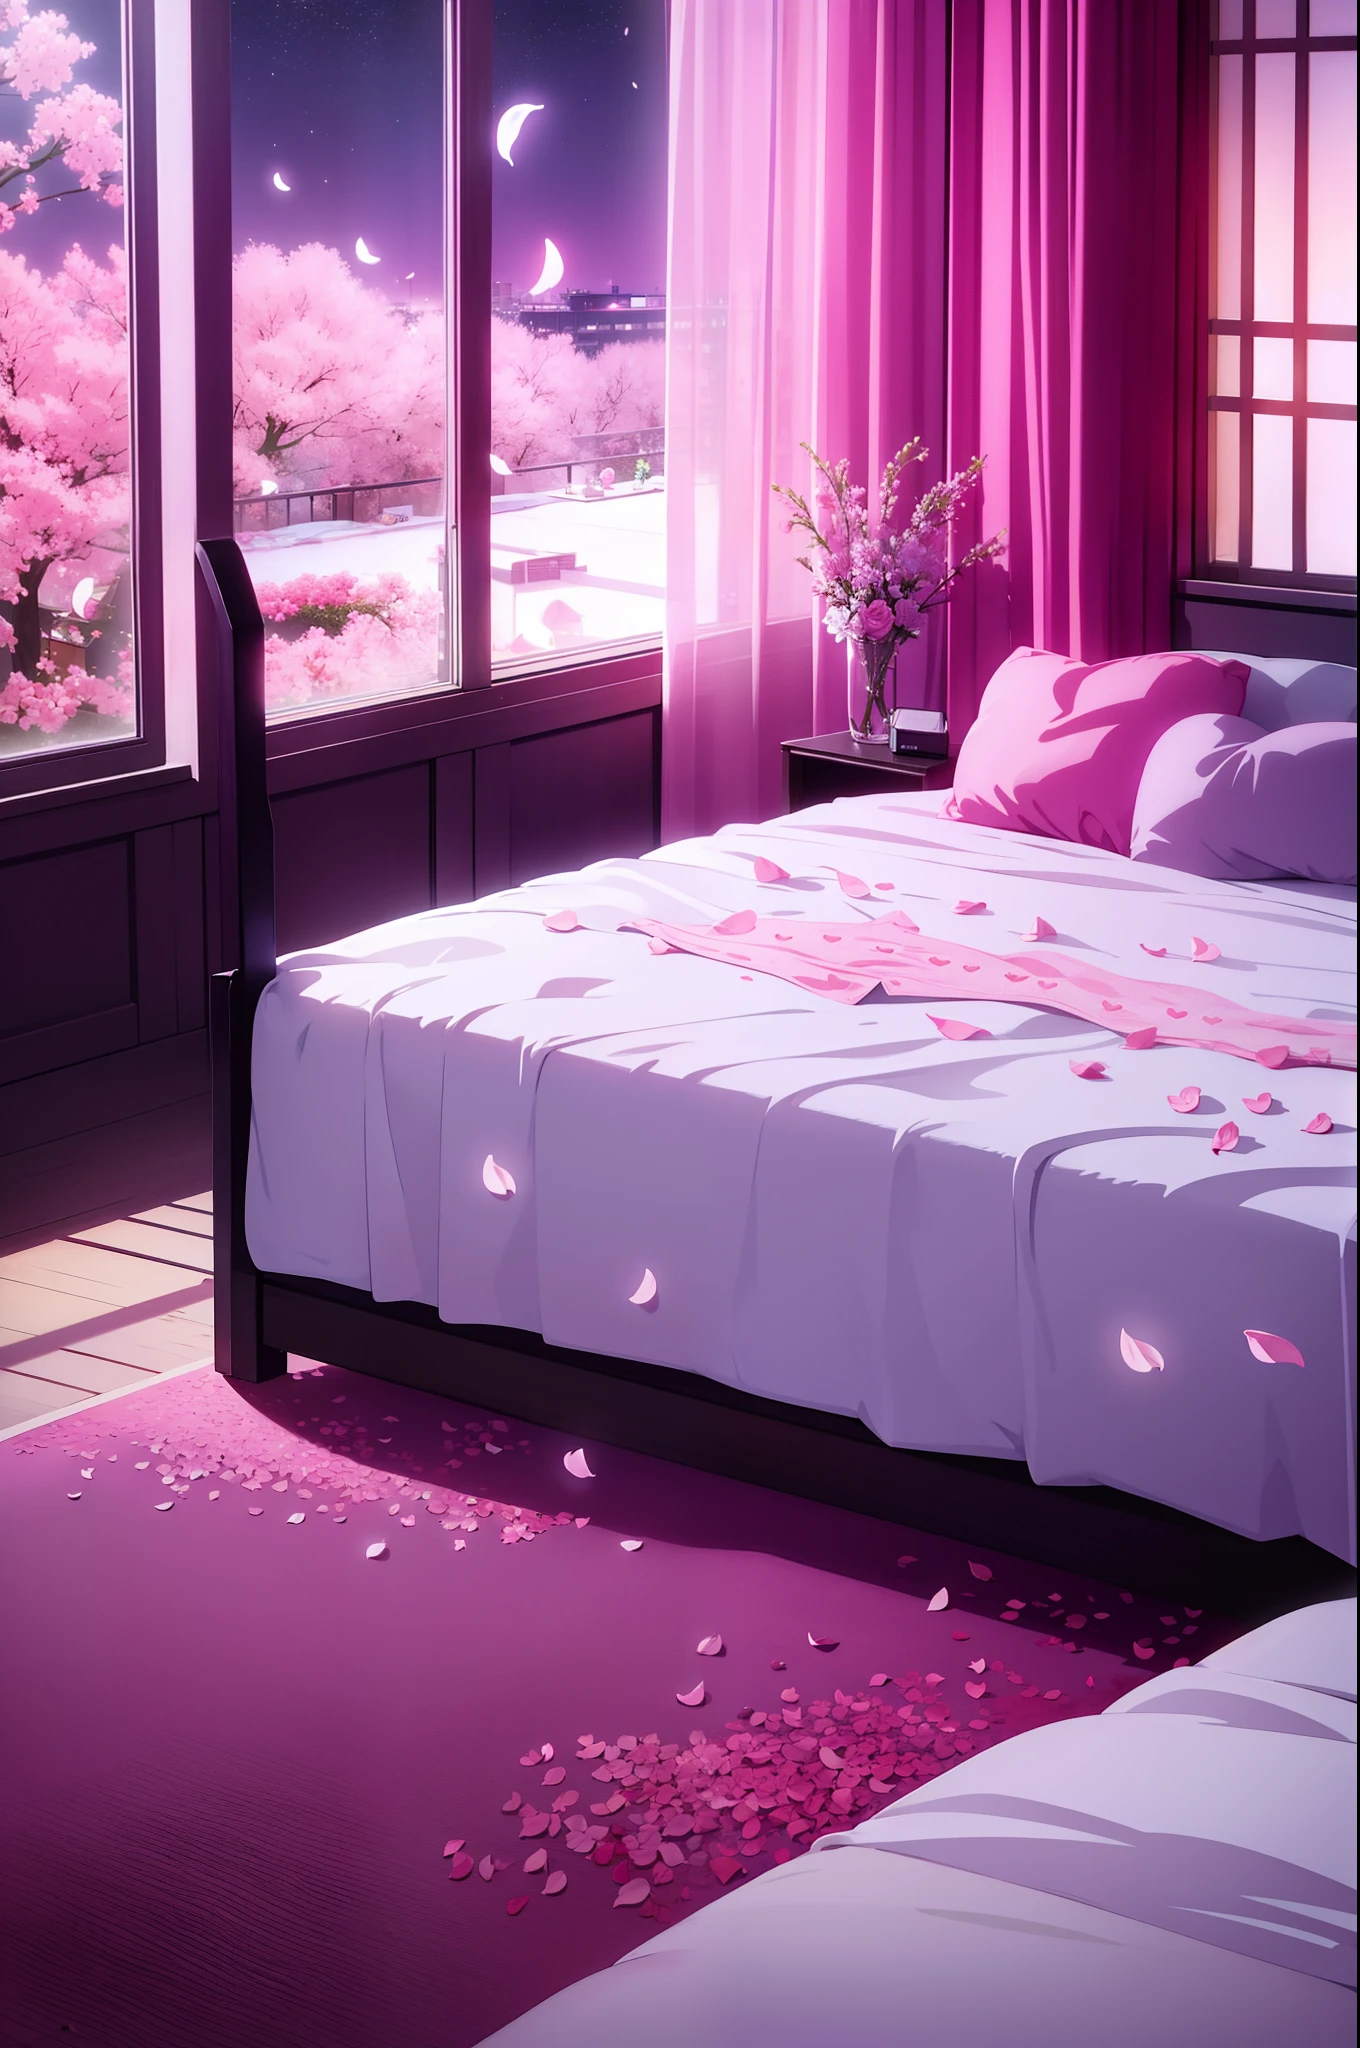 床上散落著花瓣的感性房間景觀, 心型床, 窗戶上的夜空, 粉紅光, 愛情飯店, 保險套的袋子, 濕床